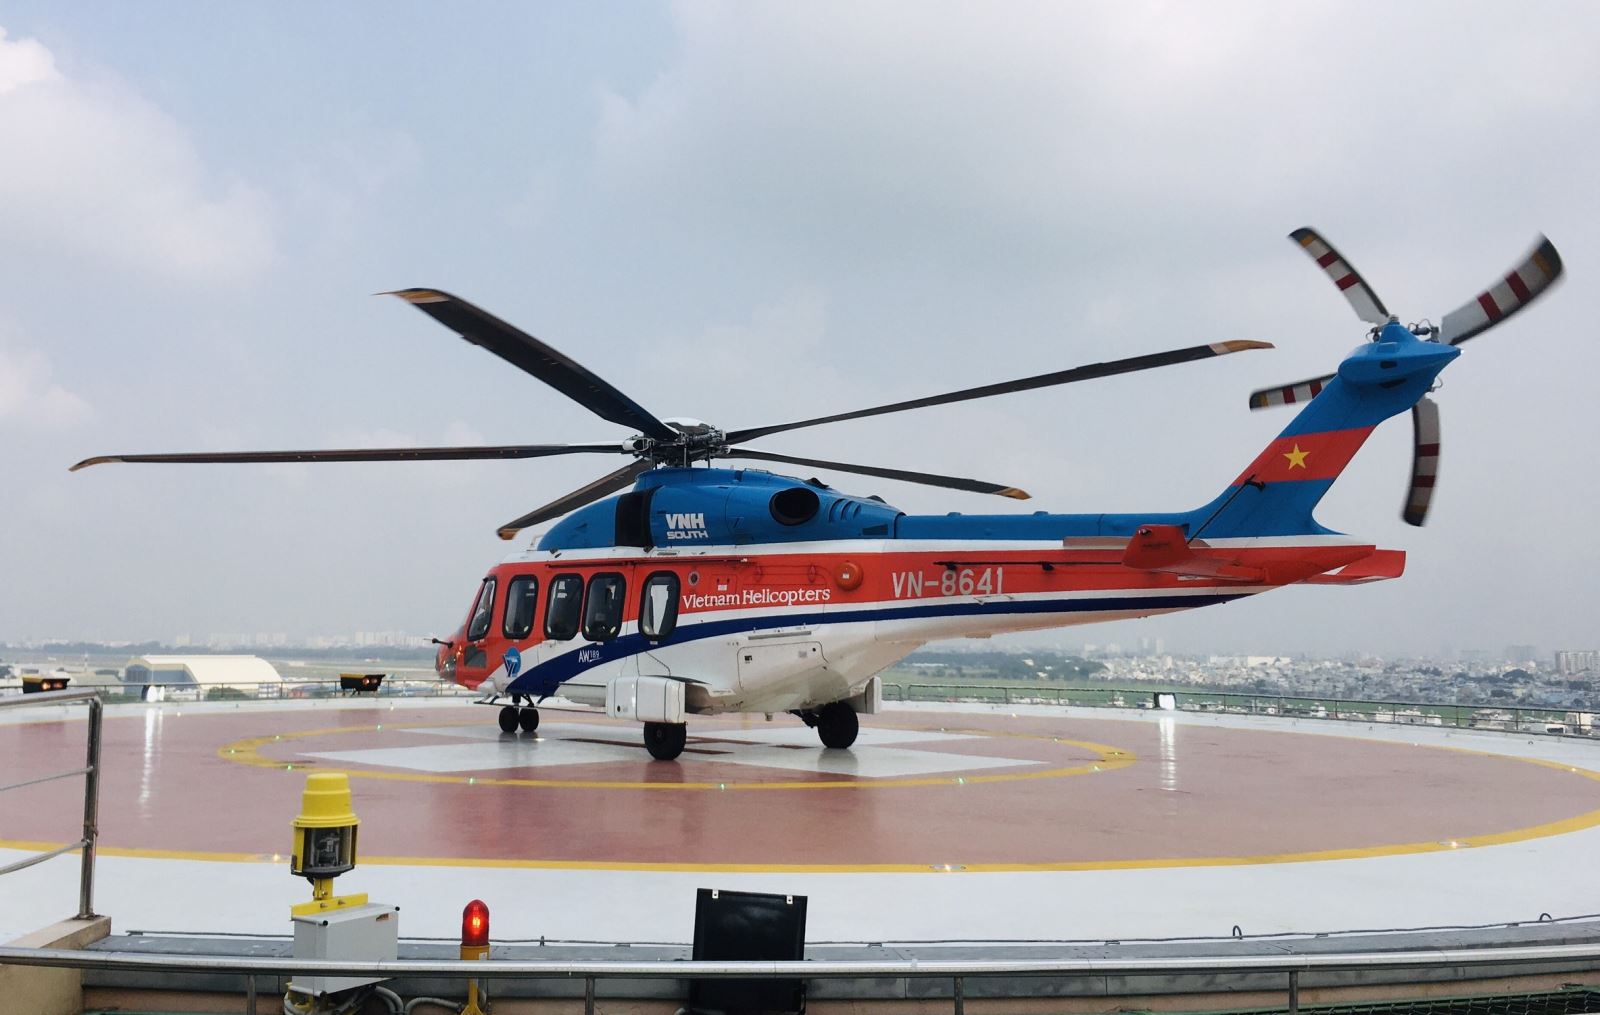 Khai thác tour du lịch 'Ngắm TP Hồ Chí Minh từ trên cao' bằng máy bay trực thăng vào dịp 30/4-1/5 - Ảnh 1.